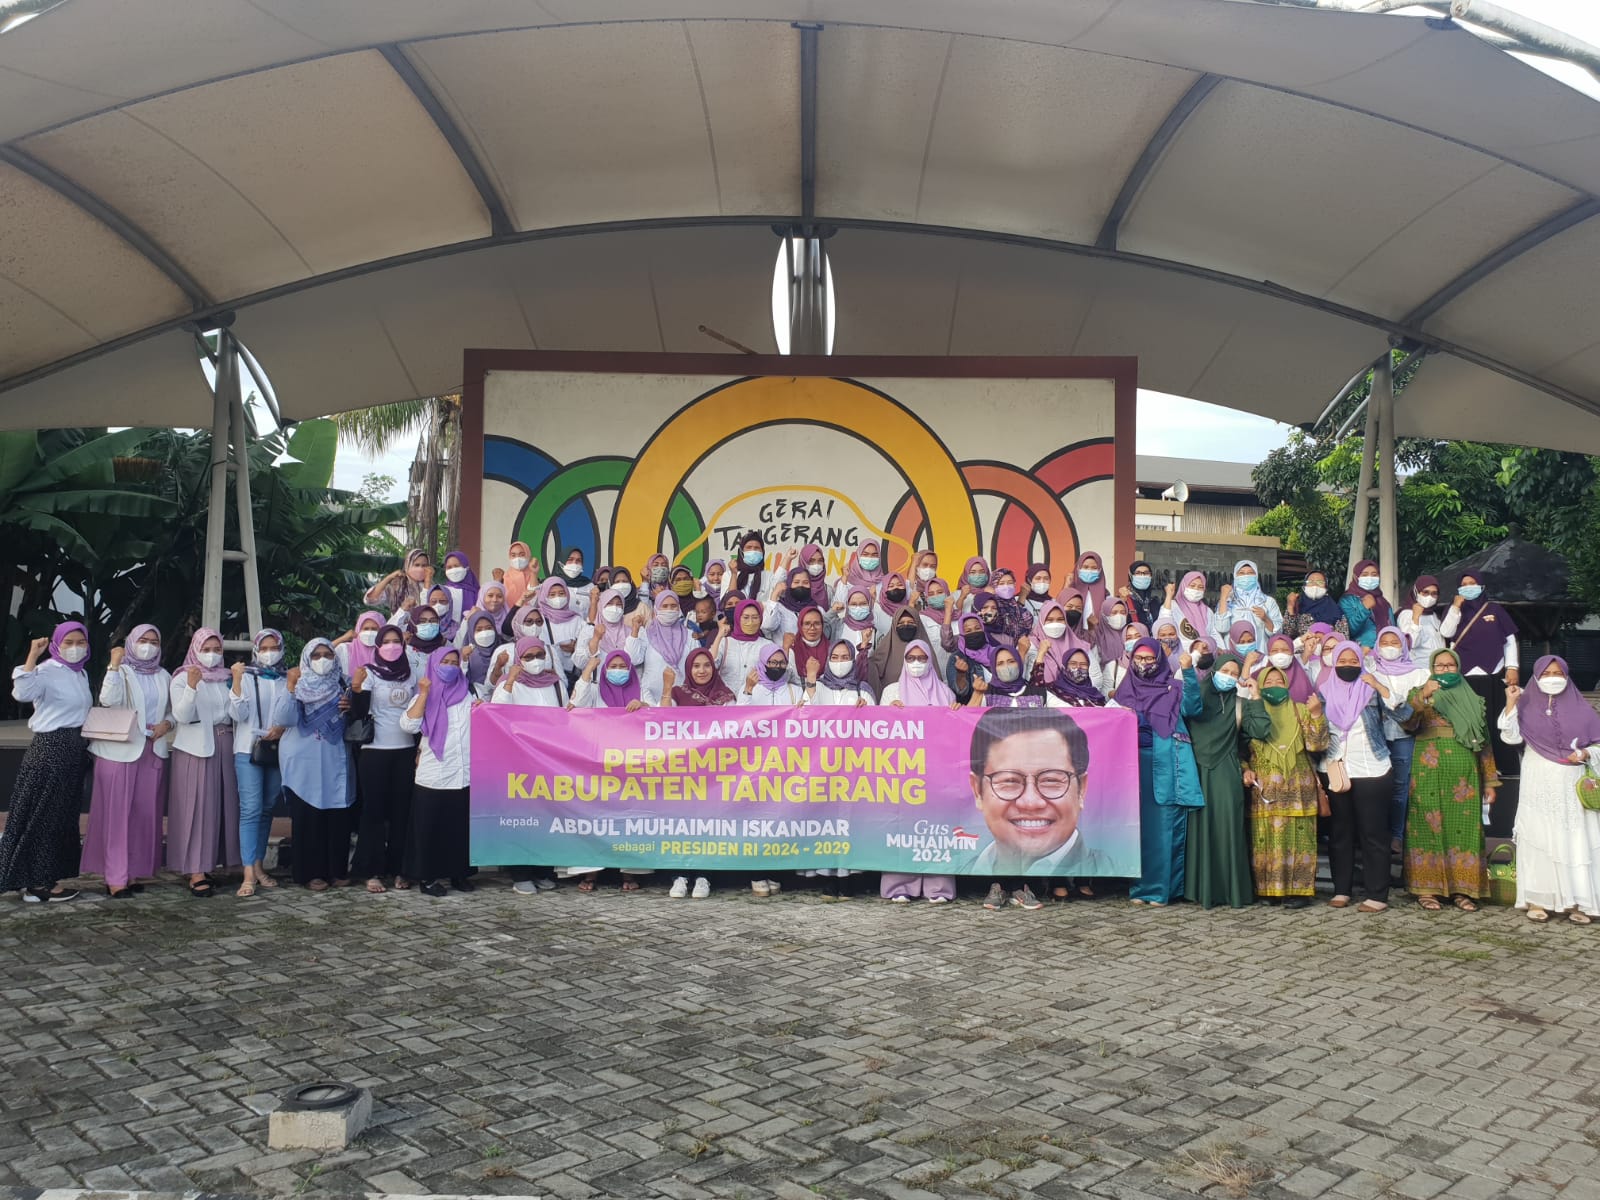 Bawa Asa dan Dukungan, Ratusan Ibu UMKM Kab. Tangerang Inginkan Gus Muhaimin Jadi Presiden 2024